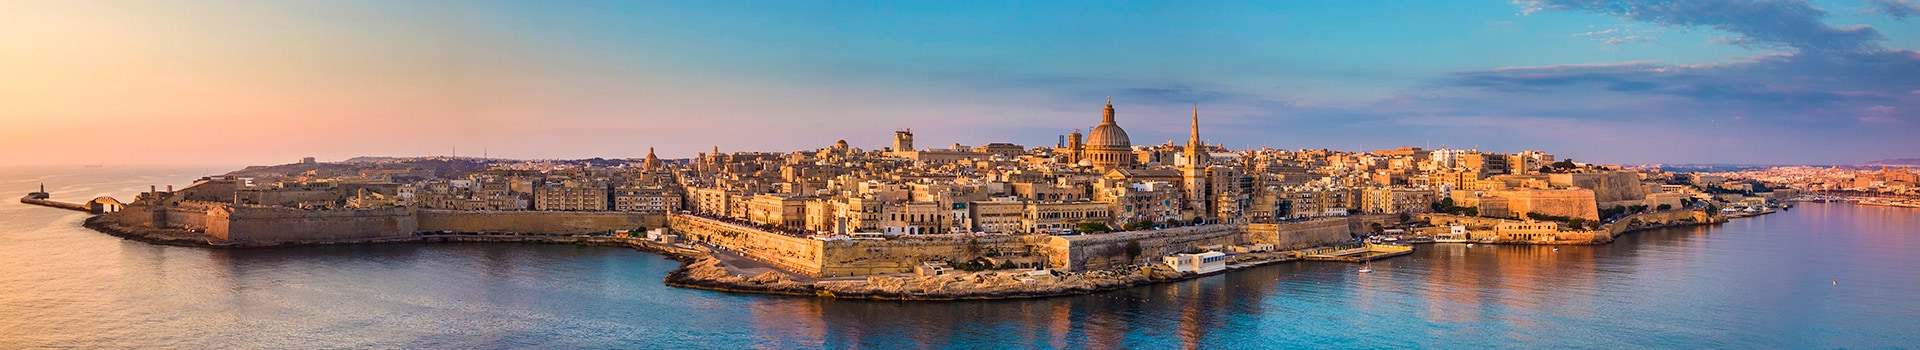 Roma - Malta